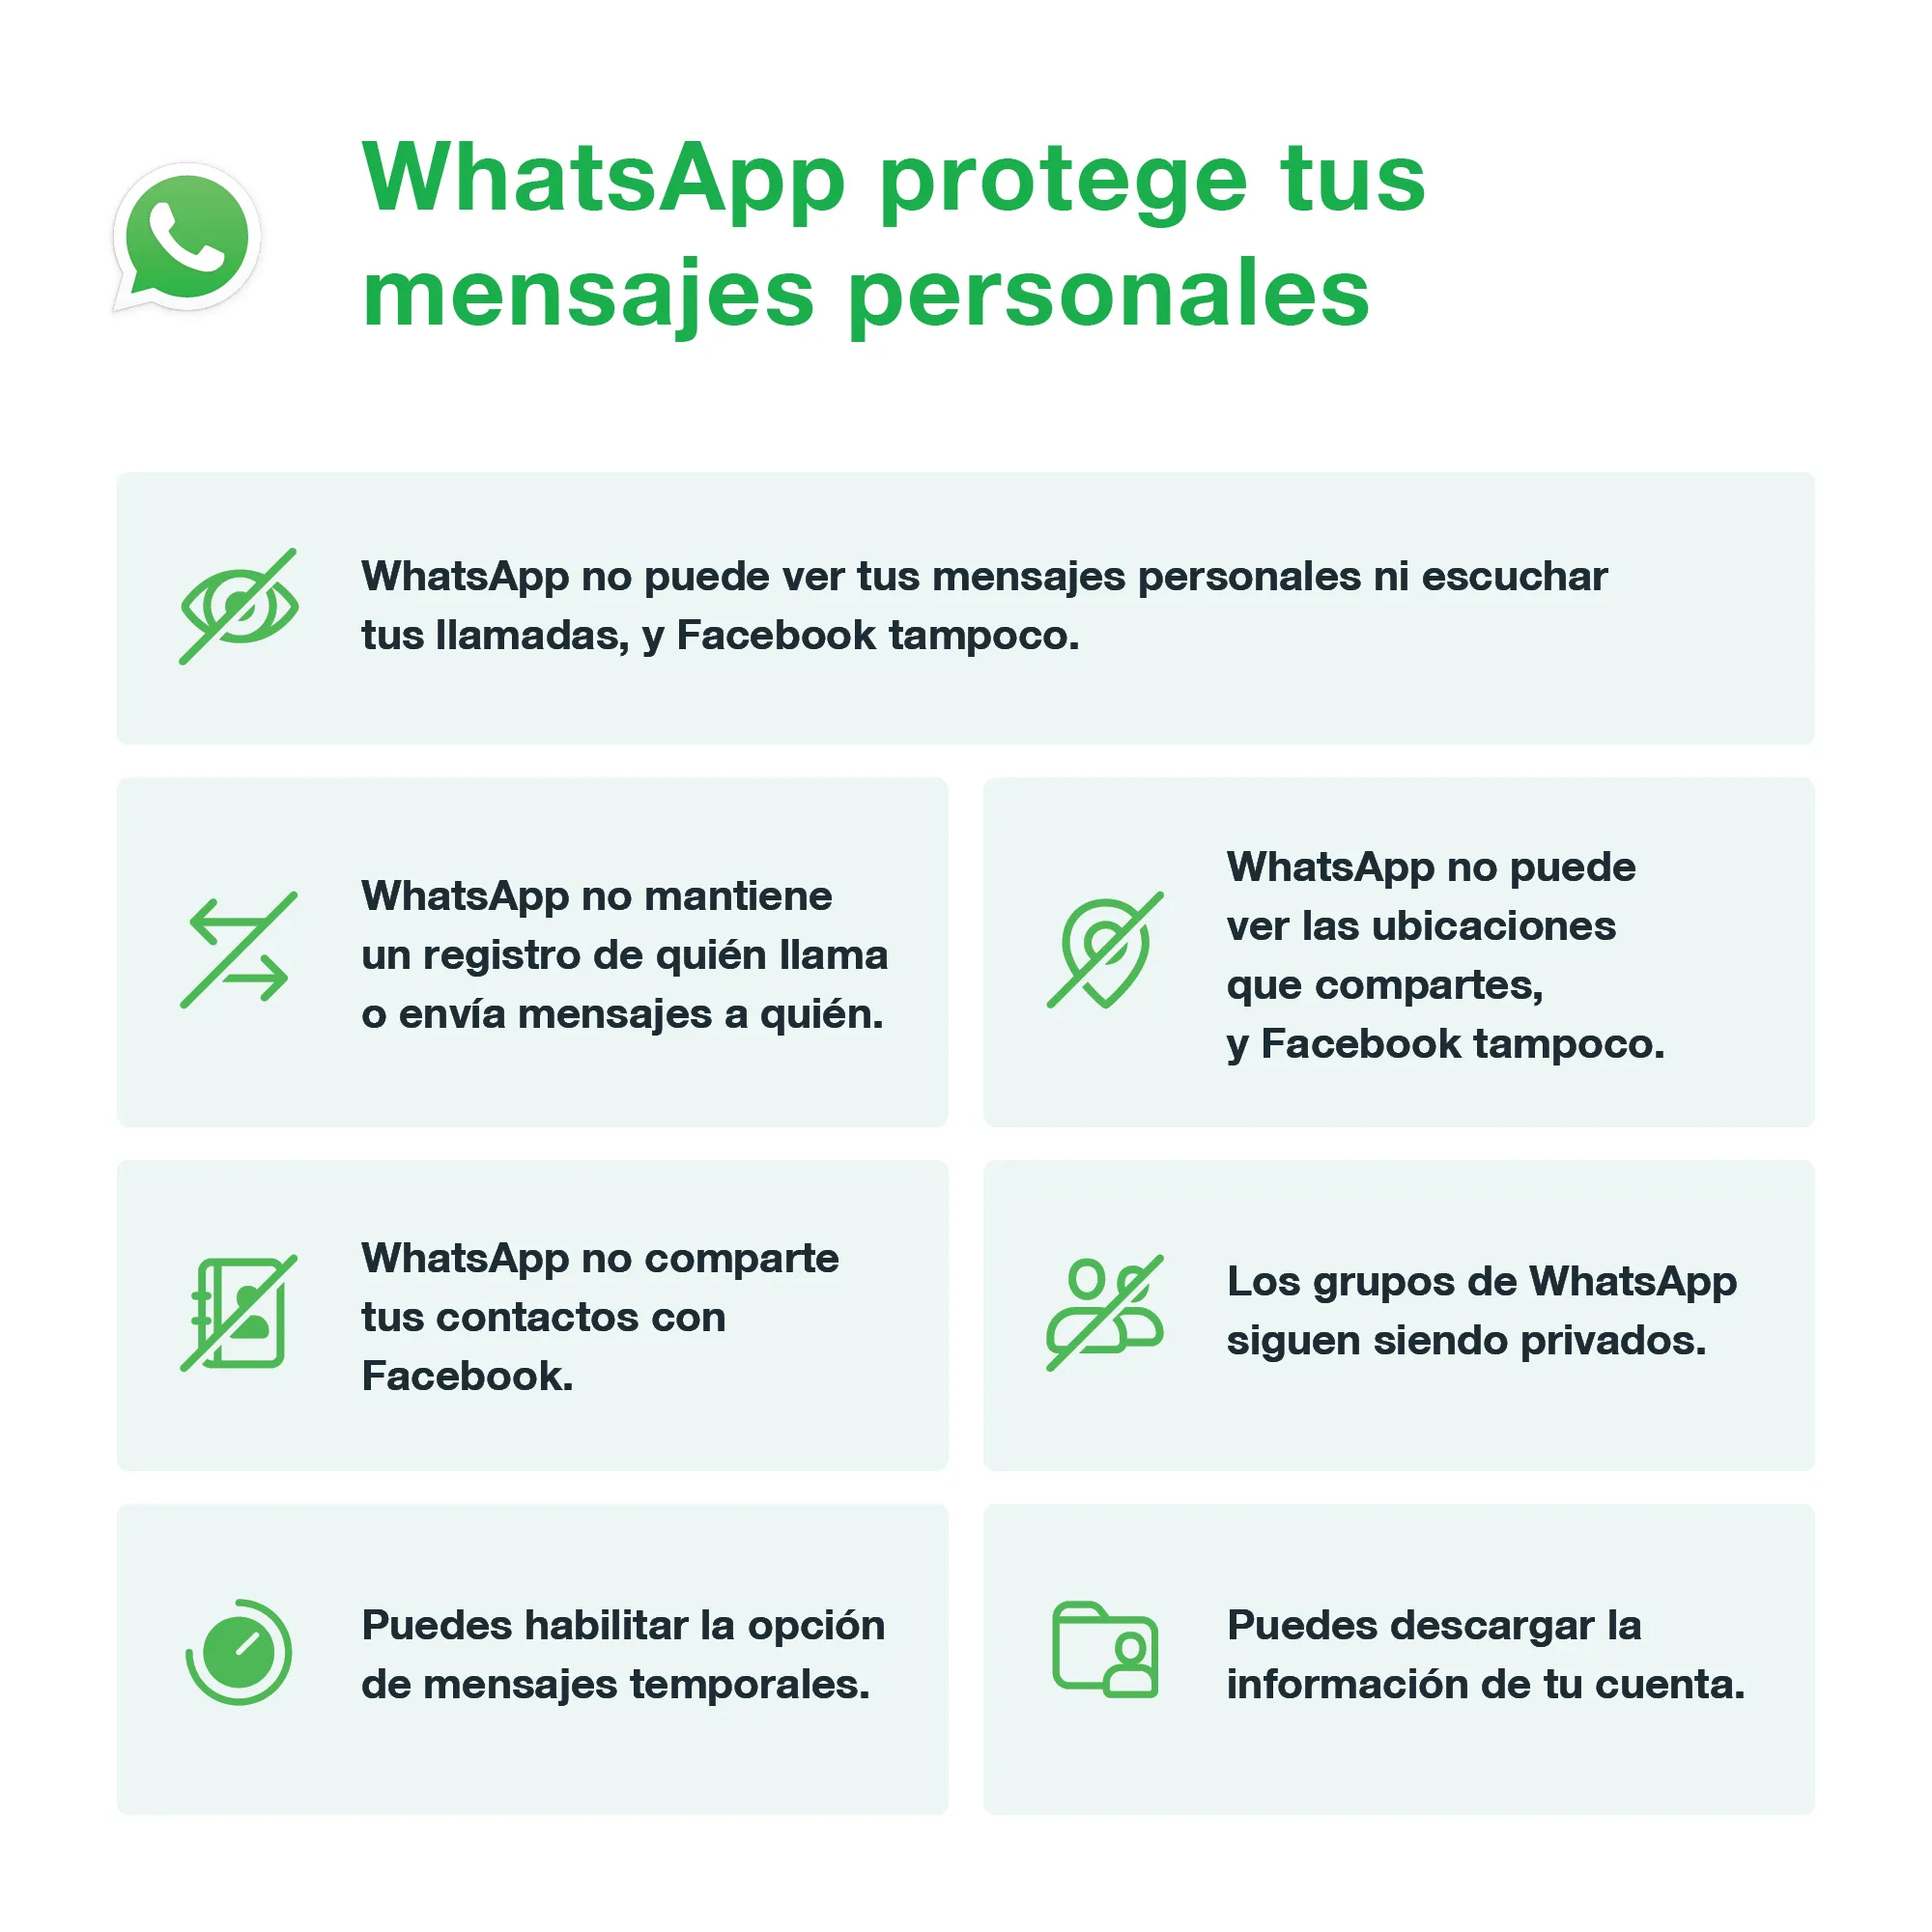 Protección de mensajes según WhatsApp.